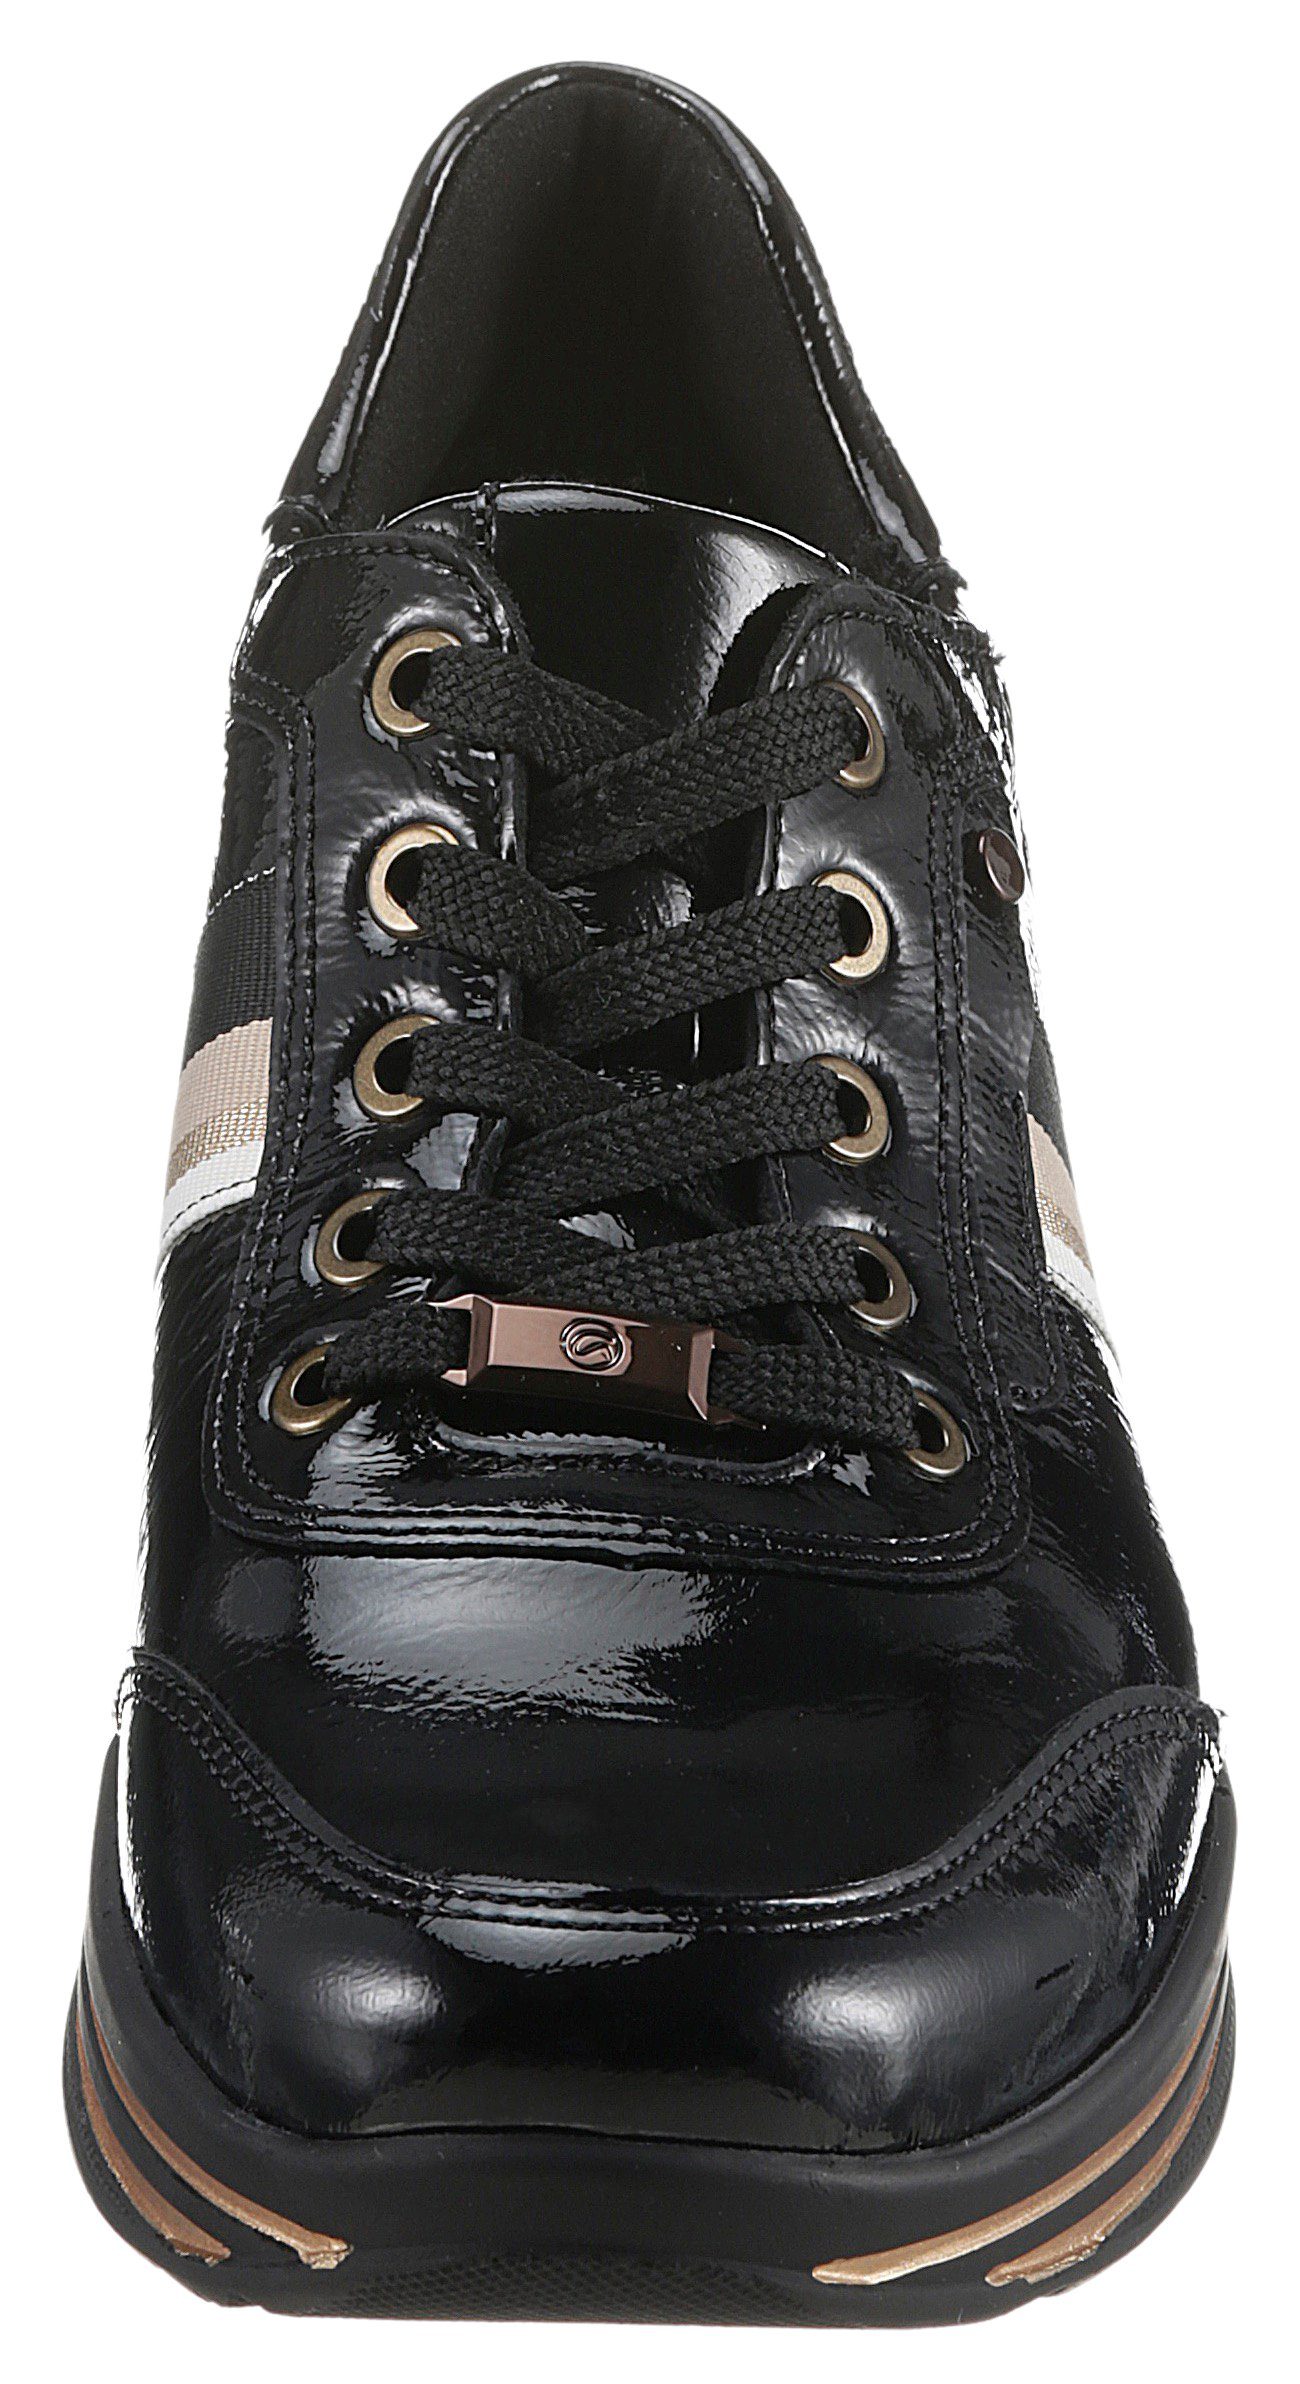 Ara 049783 Komfortweite SAPPORO in schwarz (sehr H weit) Sneaker